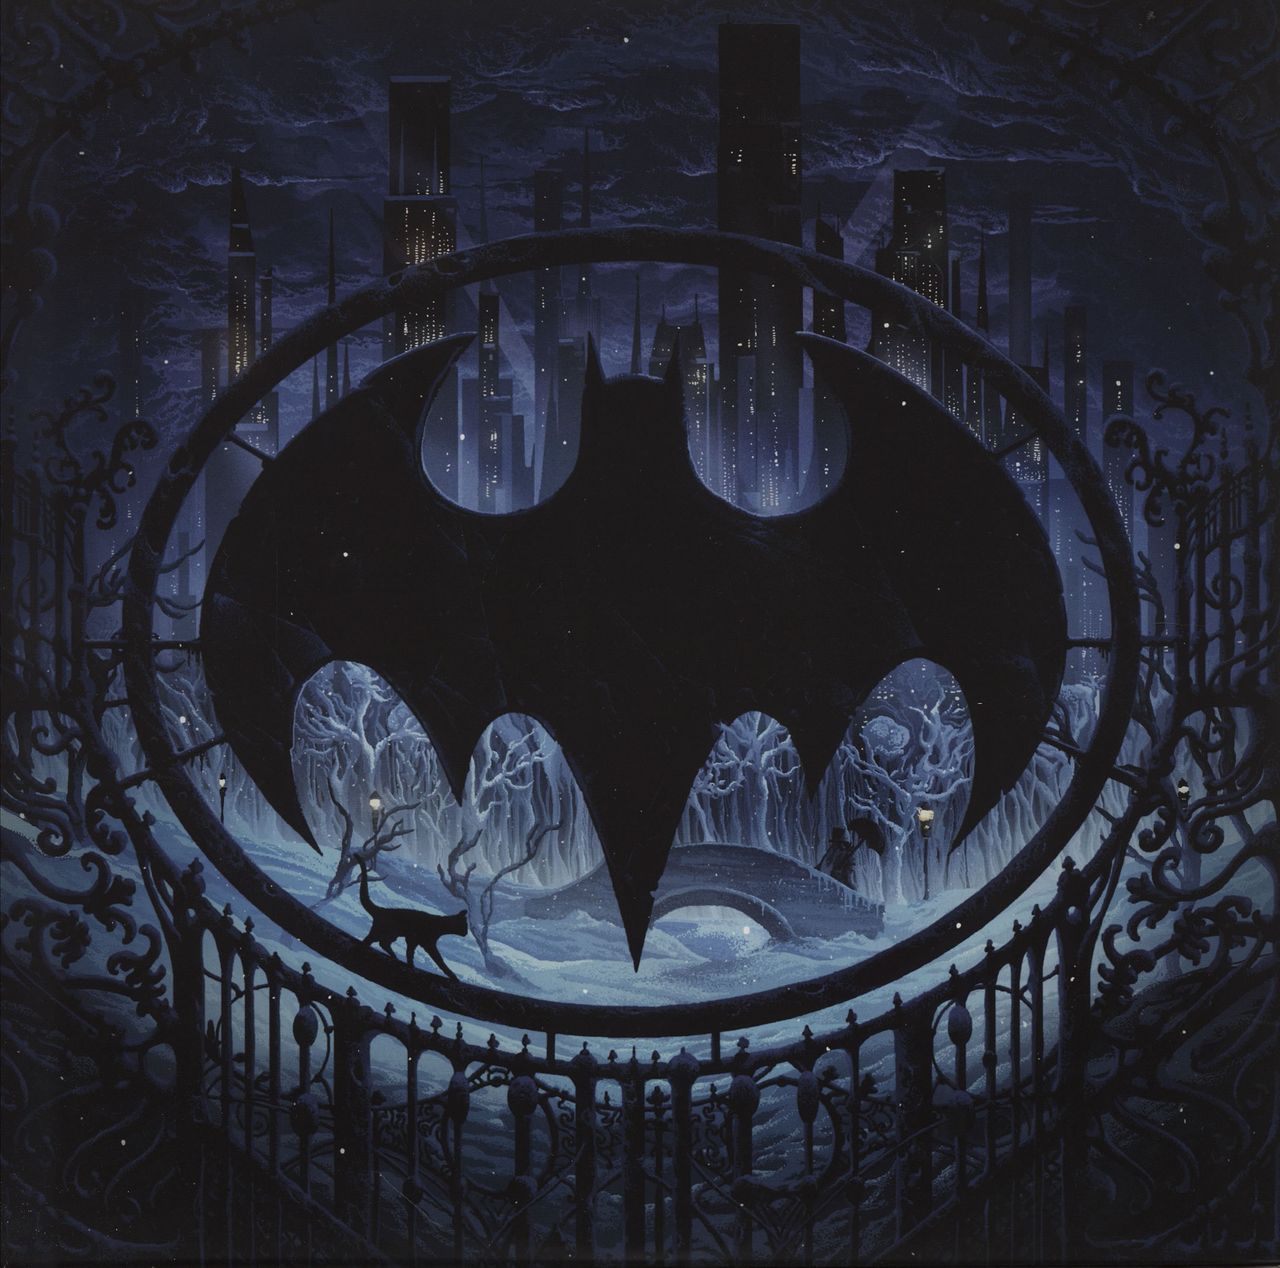 Danny Elfman Batman Returns US 2-LP vinyl set — 